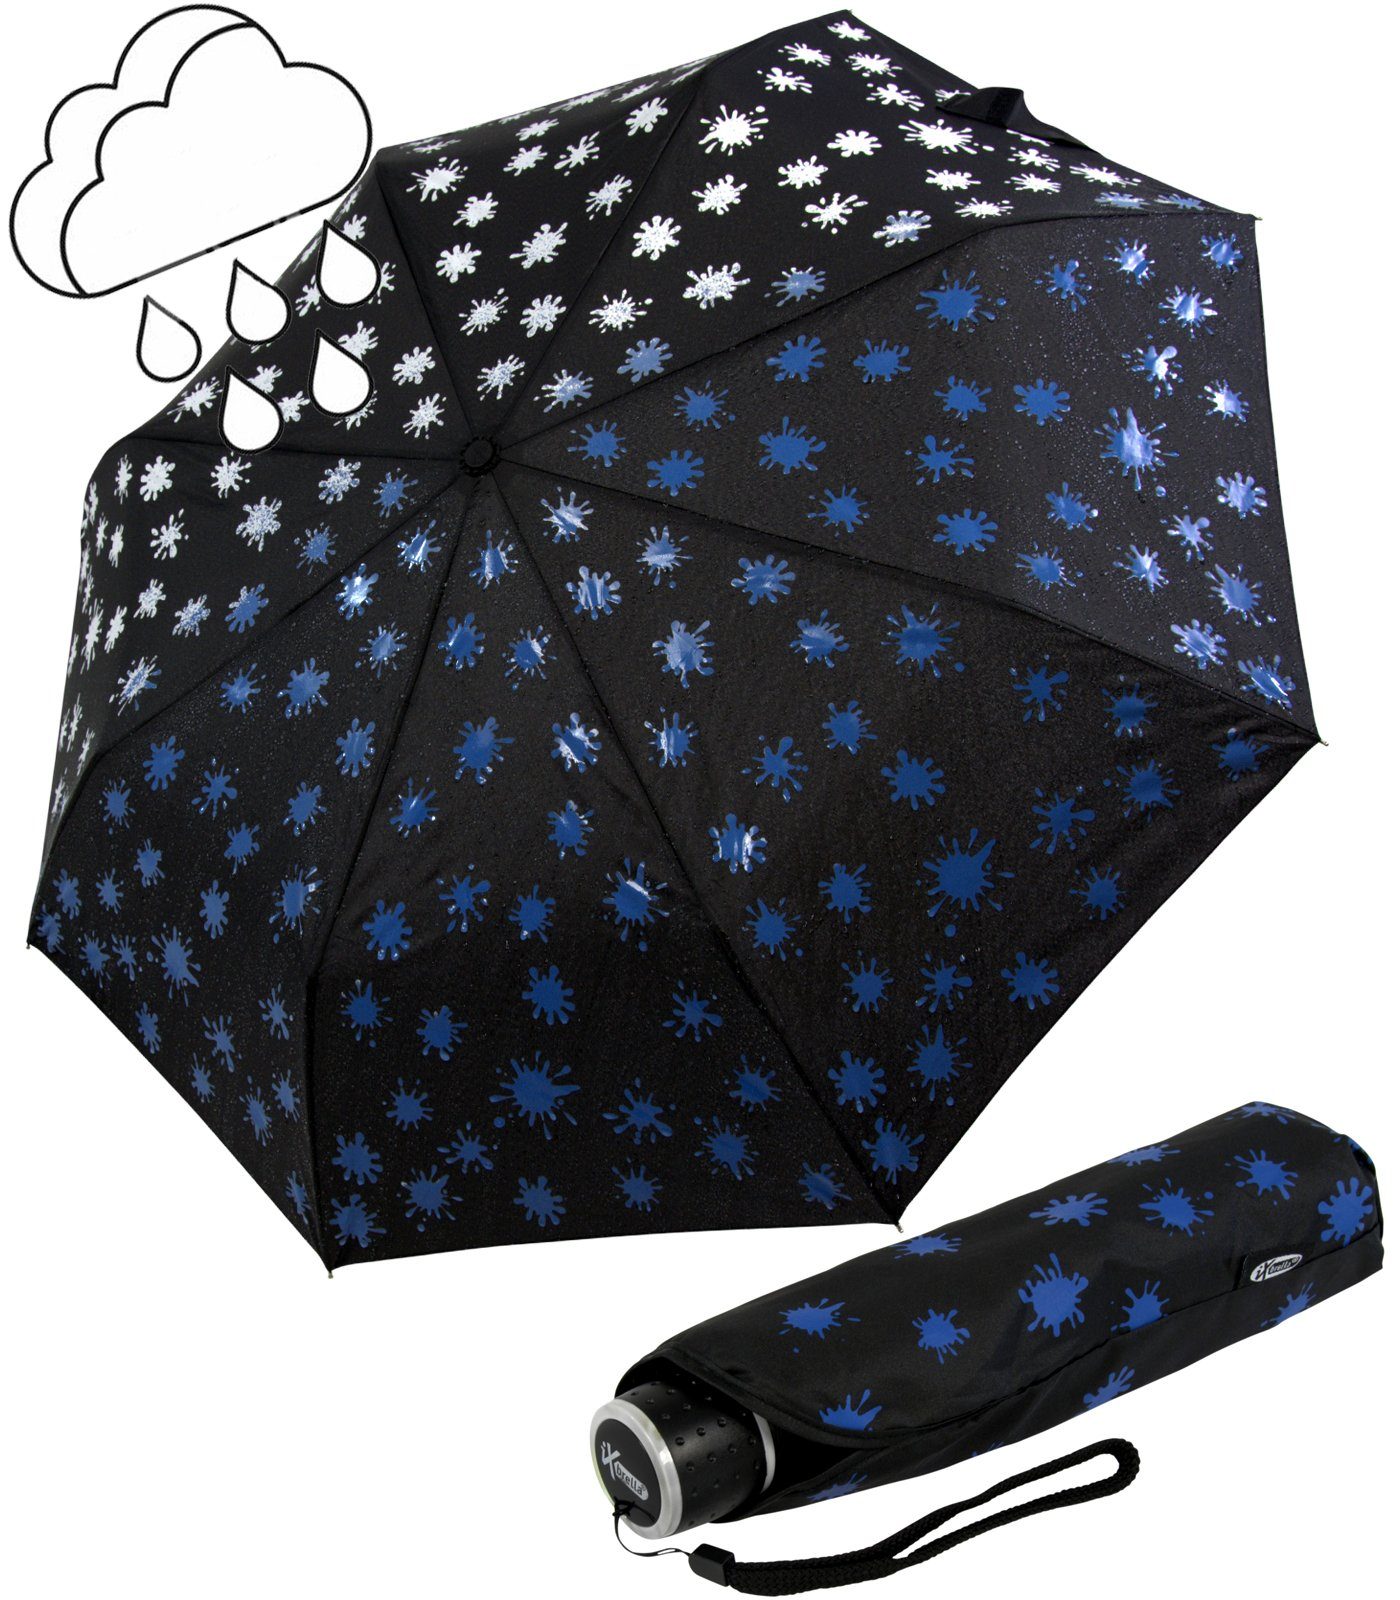 iX-brella Taschenregenschirm Mini Ultra Light - mit großem Dach - extra leicht, Farbänderung bei Nässe - Farbkleckse blau schwarz-weiß-blau